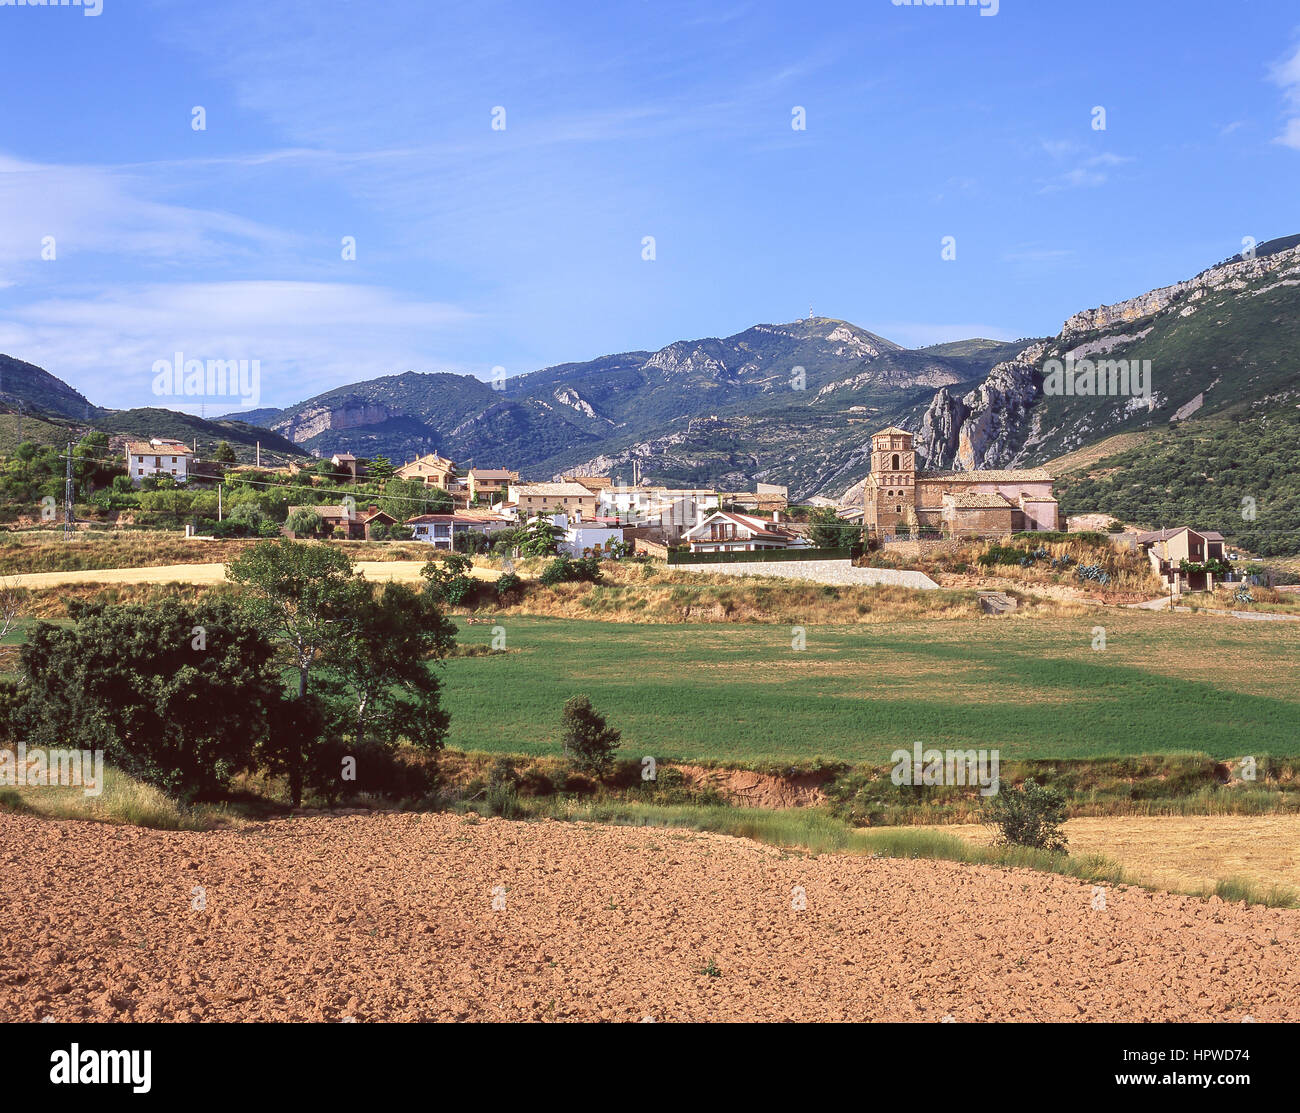 Aldea, Nueno, provincia de Huesca, Aragón, el Reino de España Foto de stock